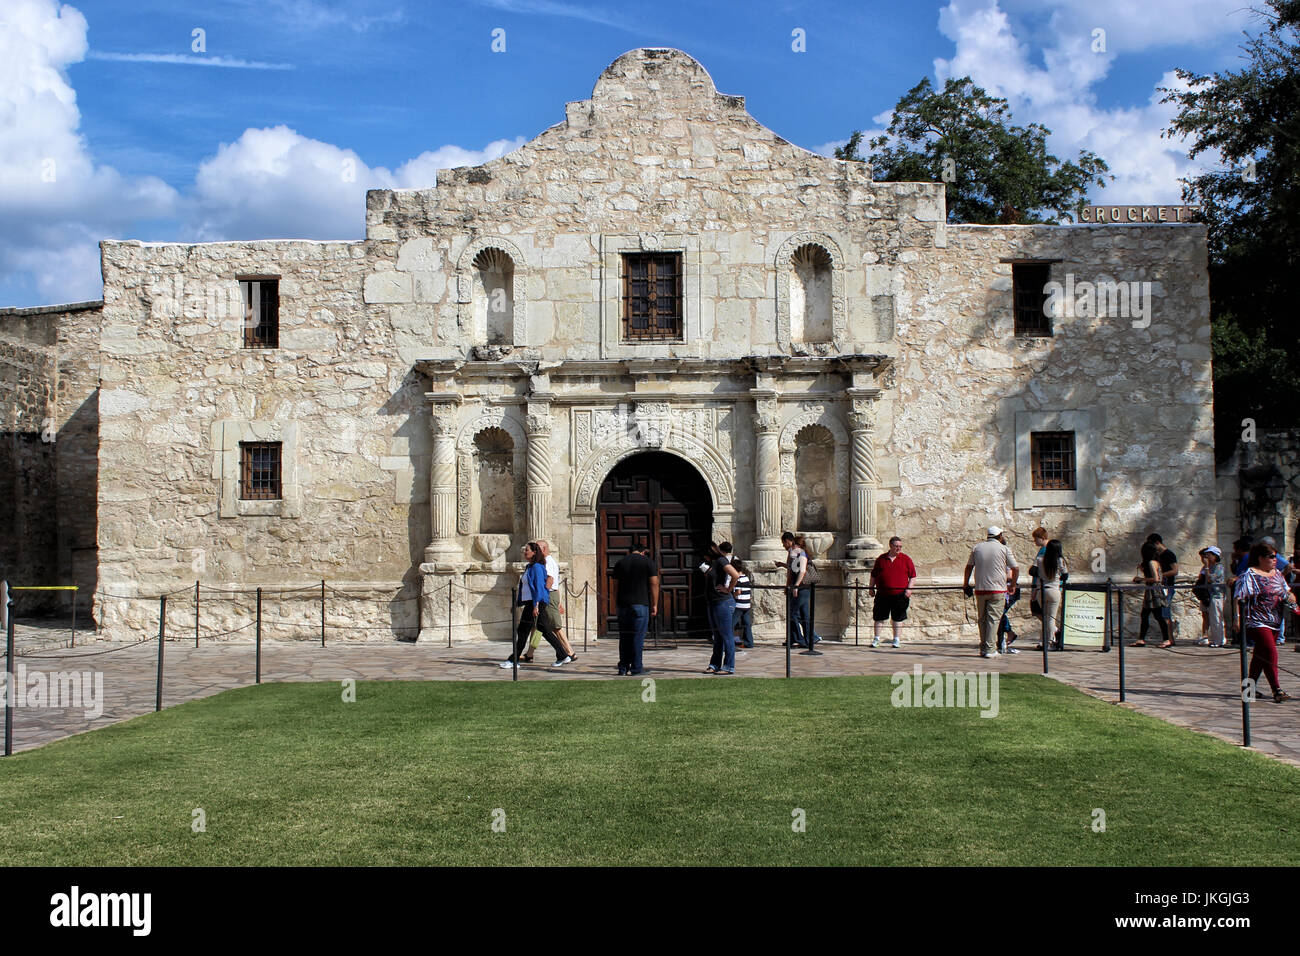 Les touristes se rendant sur le site historique d'Alamo à San Antonio, Texas Banque D'Images